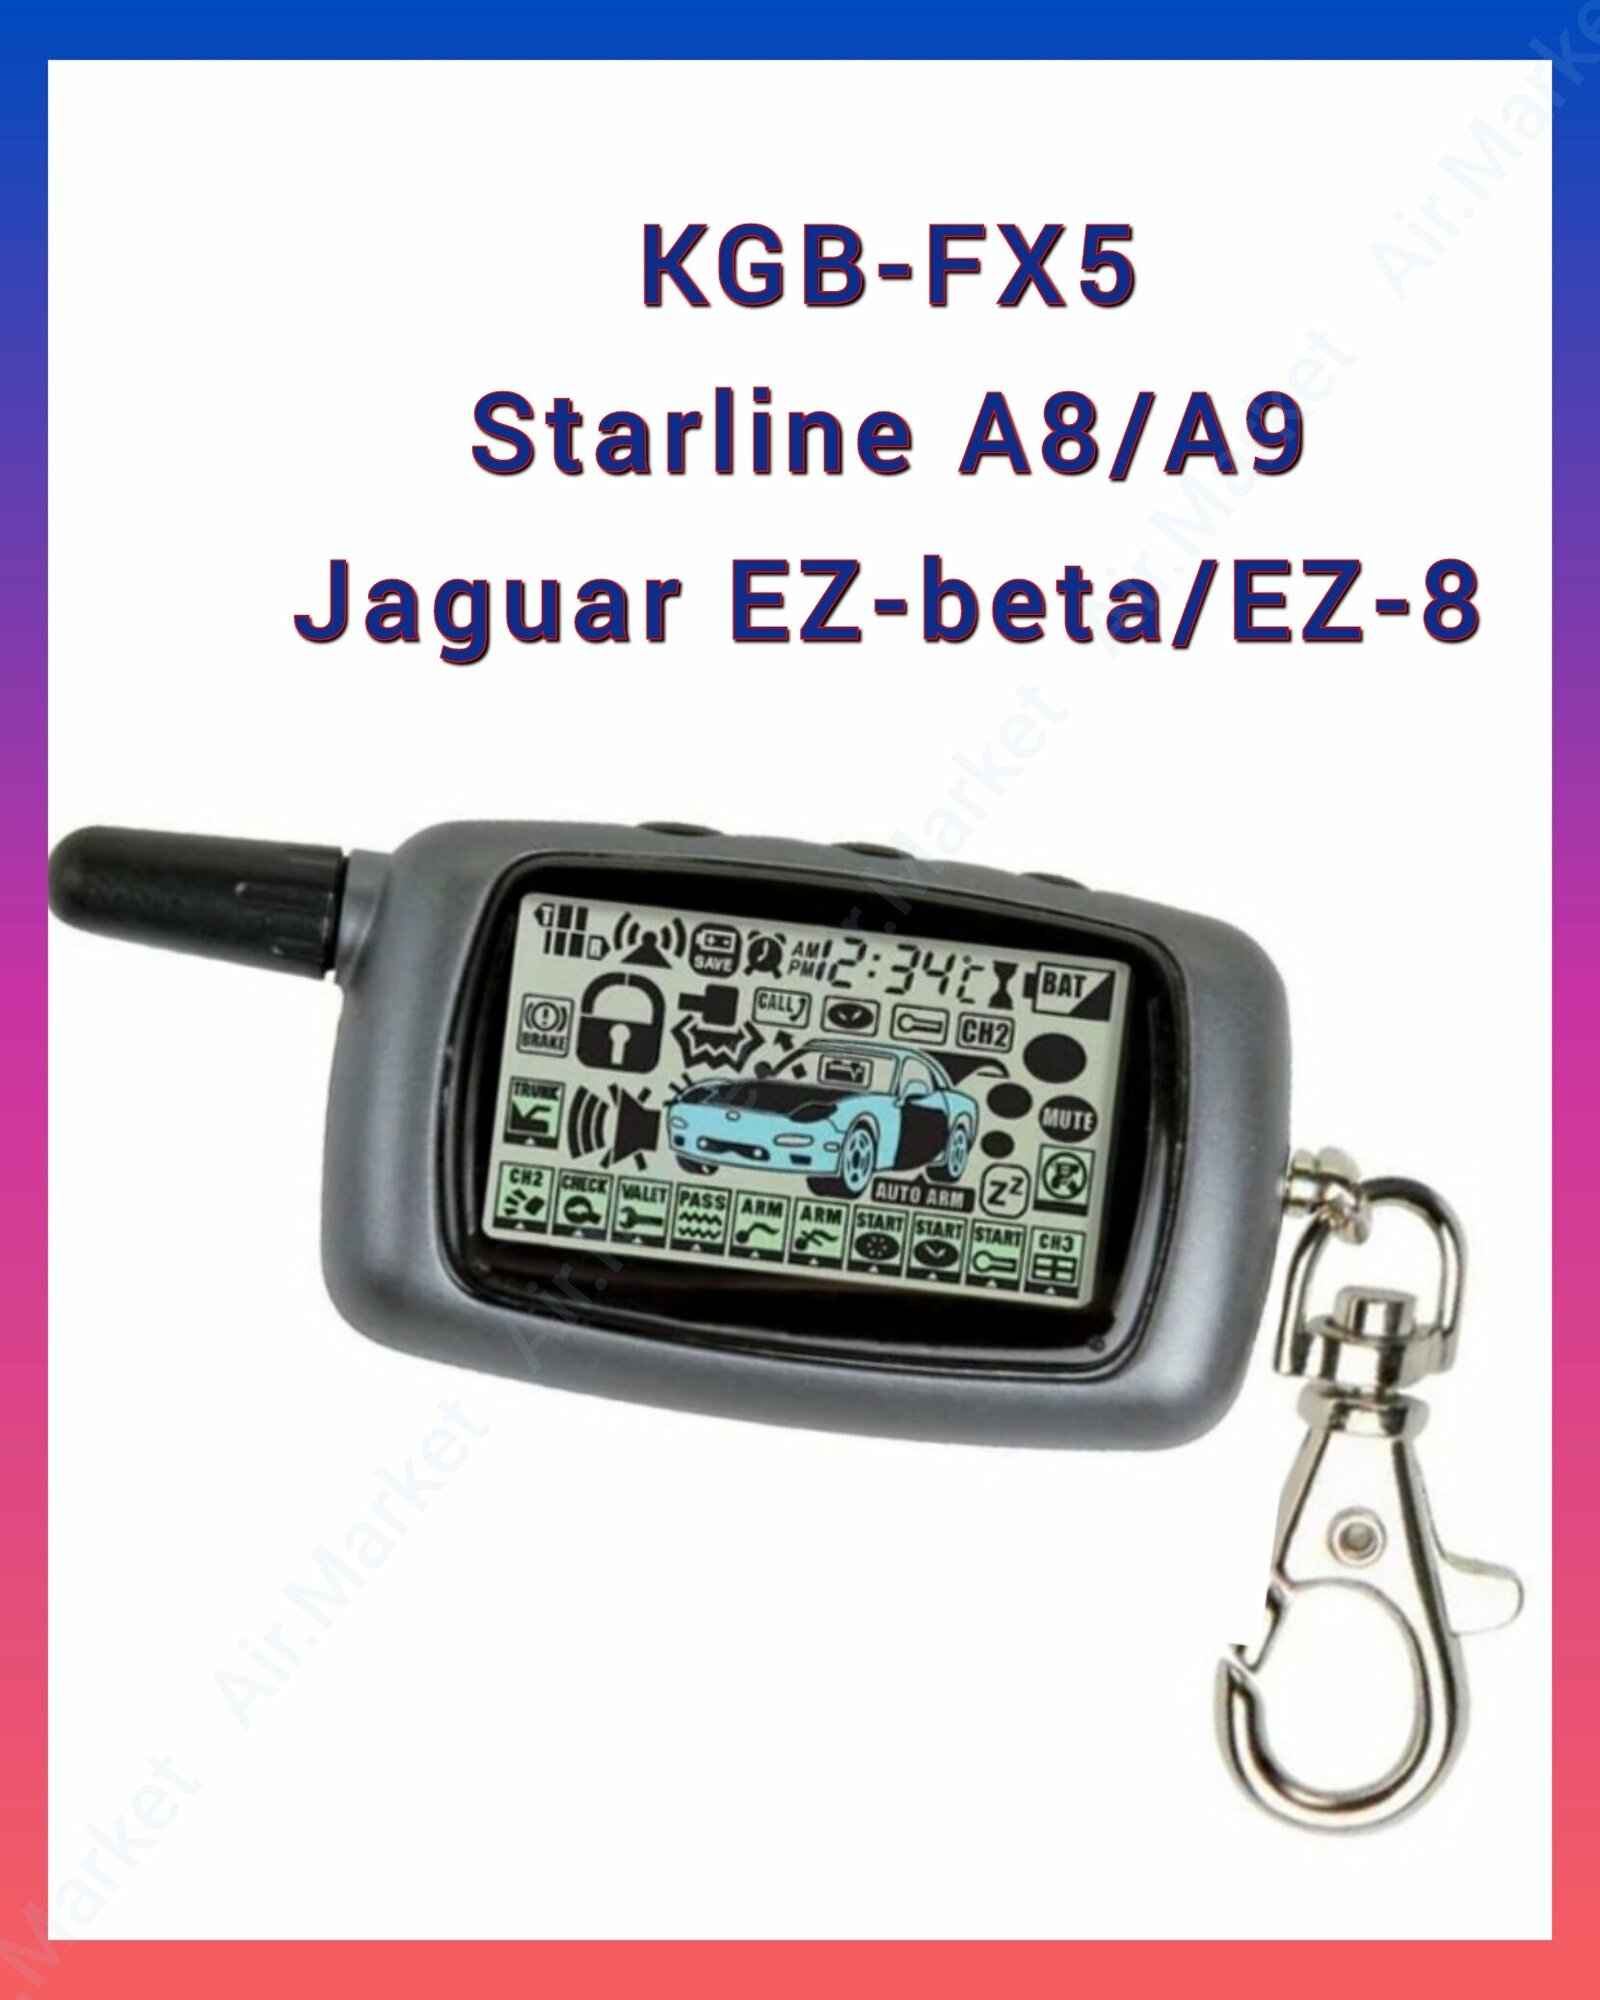 Брелок (совместимый) сигнализации StarLine A8/A9 (Старлайн А8/А9) KGB FX-5 (TFX 5) Jaguar EZ-Beta/EZ-8 с жк-дисплеем с обратной связью.